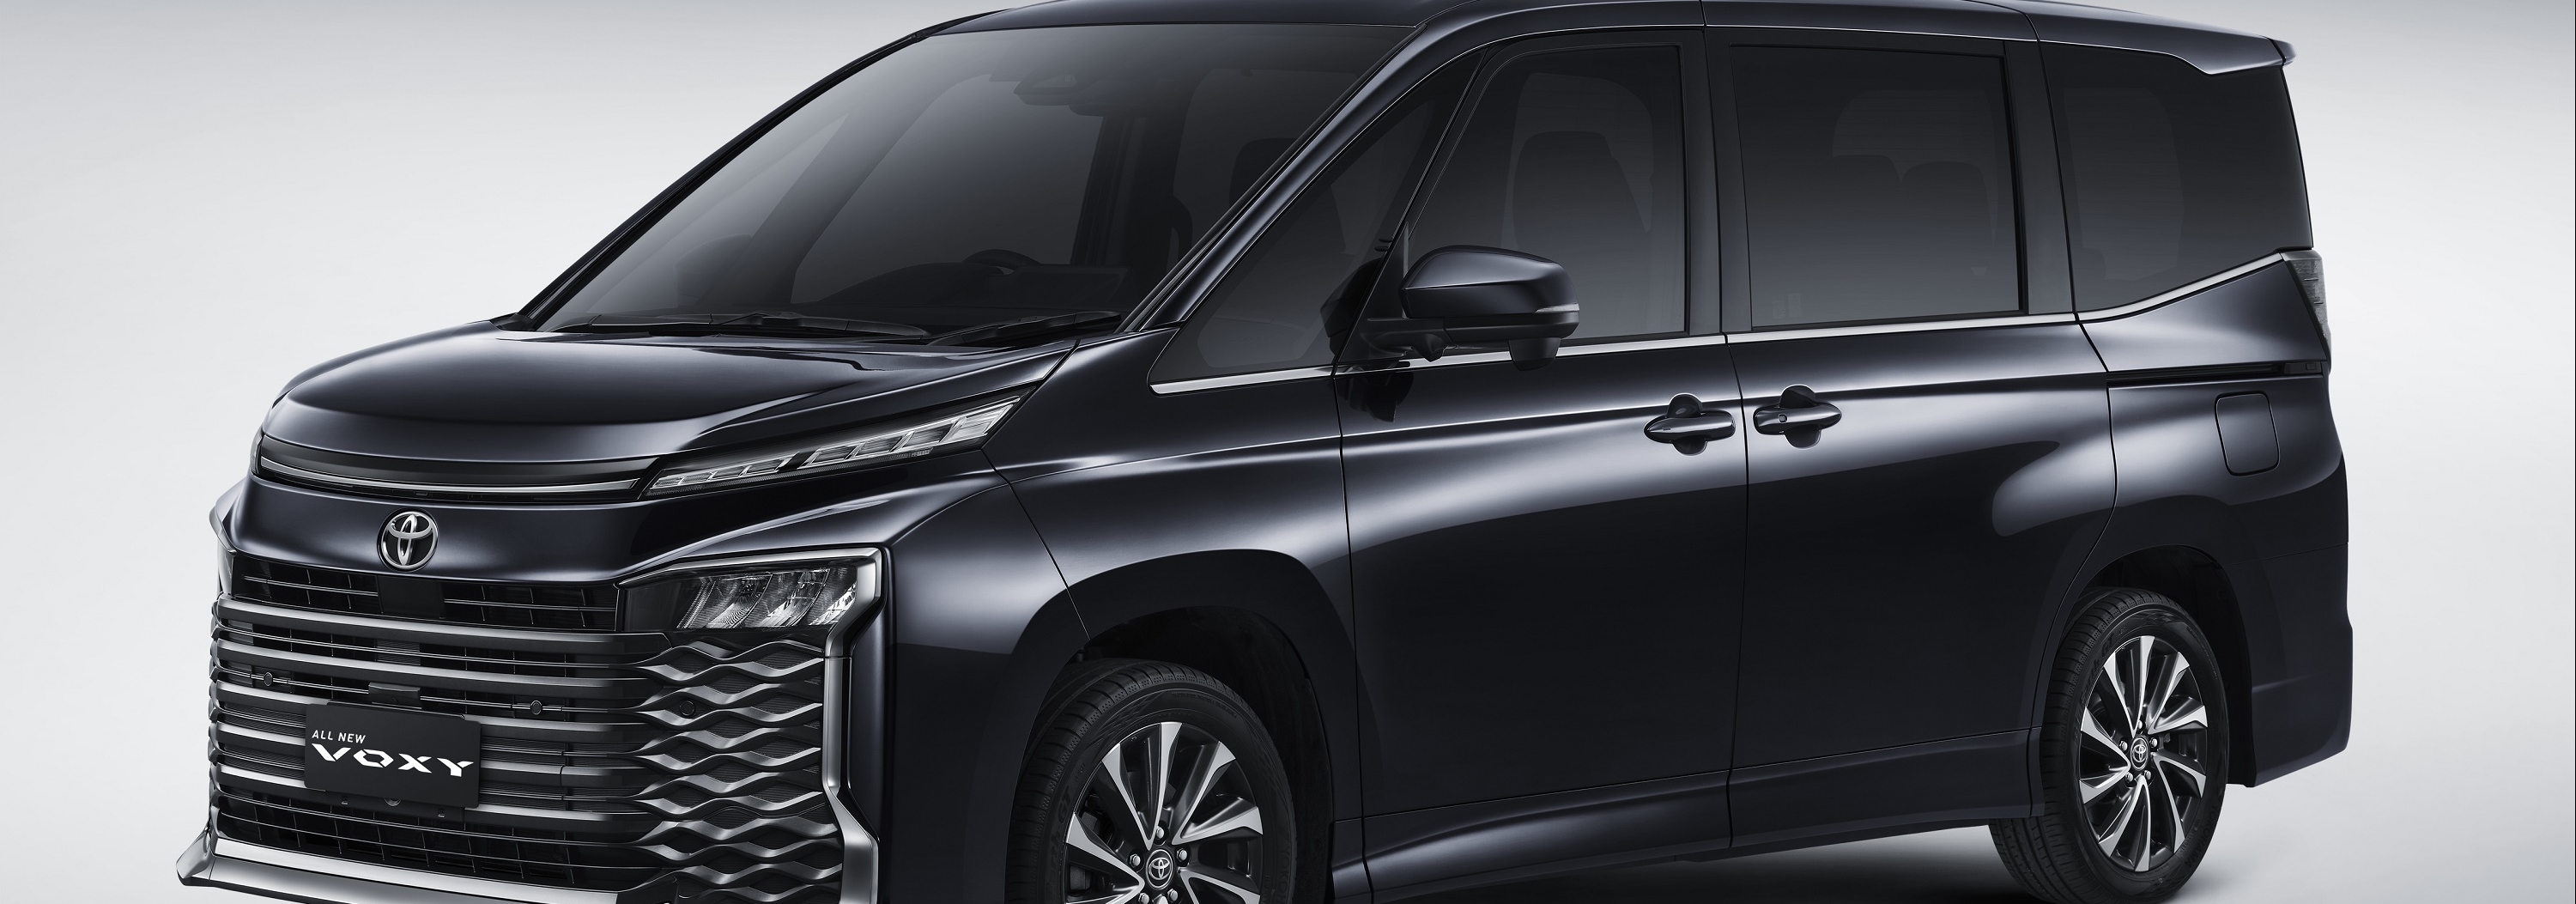 Berubah Total, MPV Premium All New Voxy Hadir Dengan Platform Dan Mesin TNGA Serta Toyota Safety Sense 3.0 